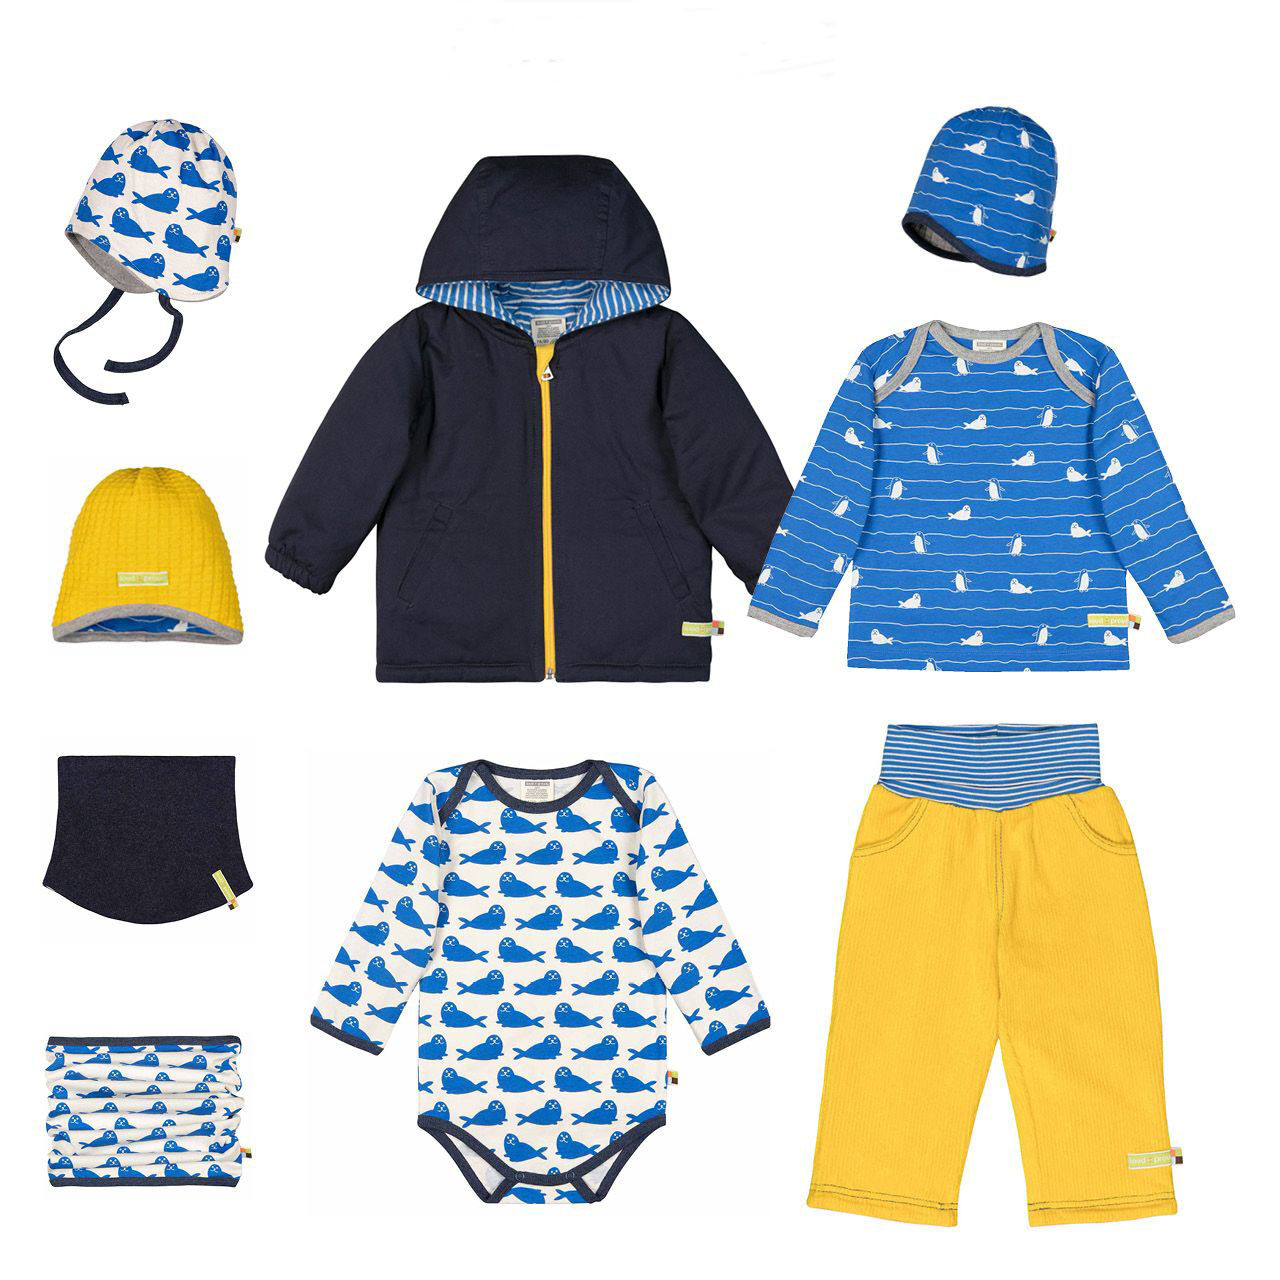 Téli gyerekruha kollekcióötlet kék-sárga összeállítás